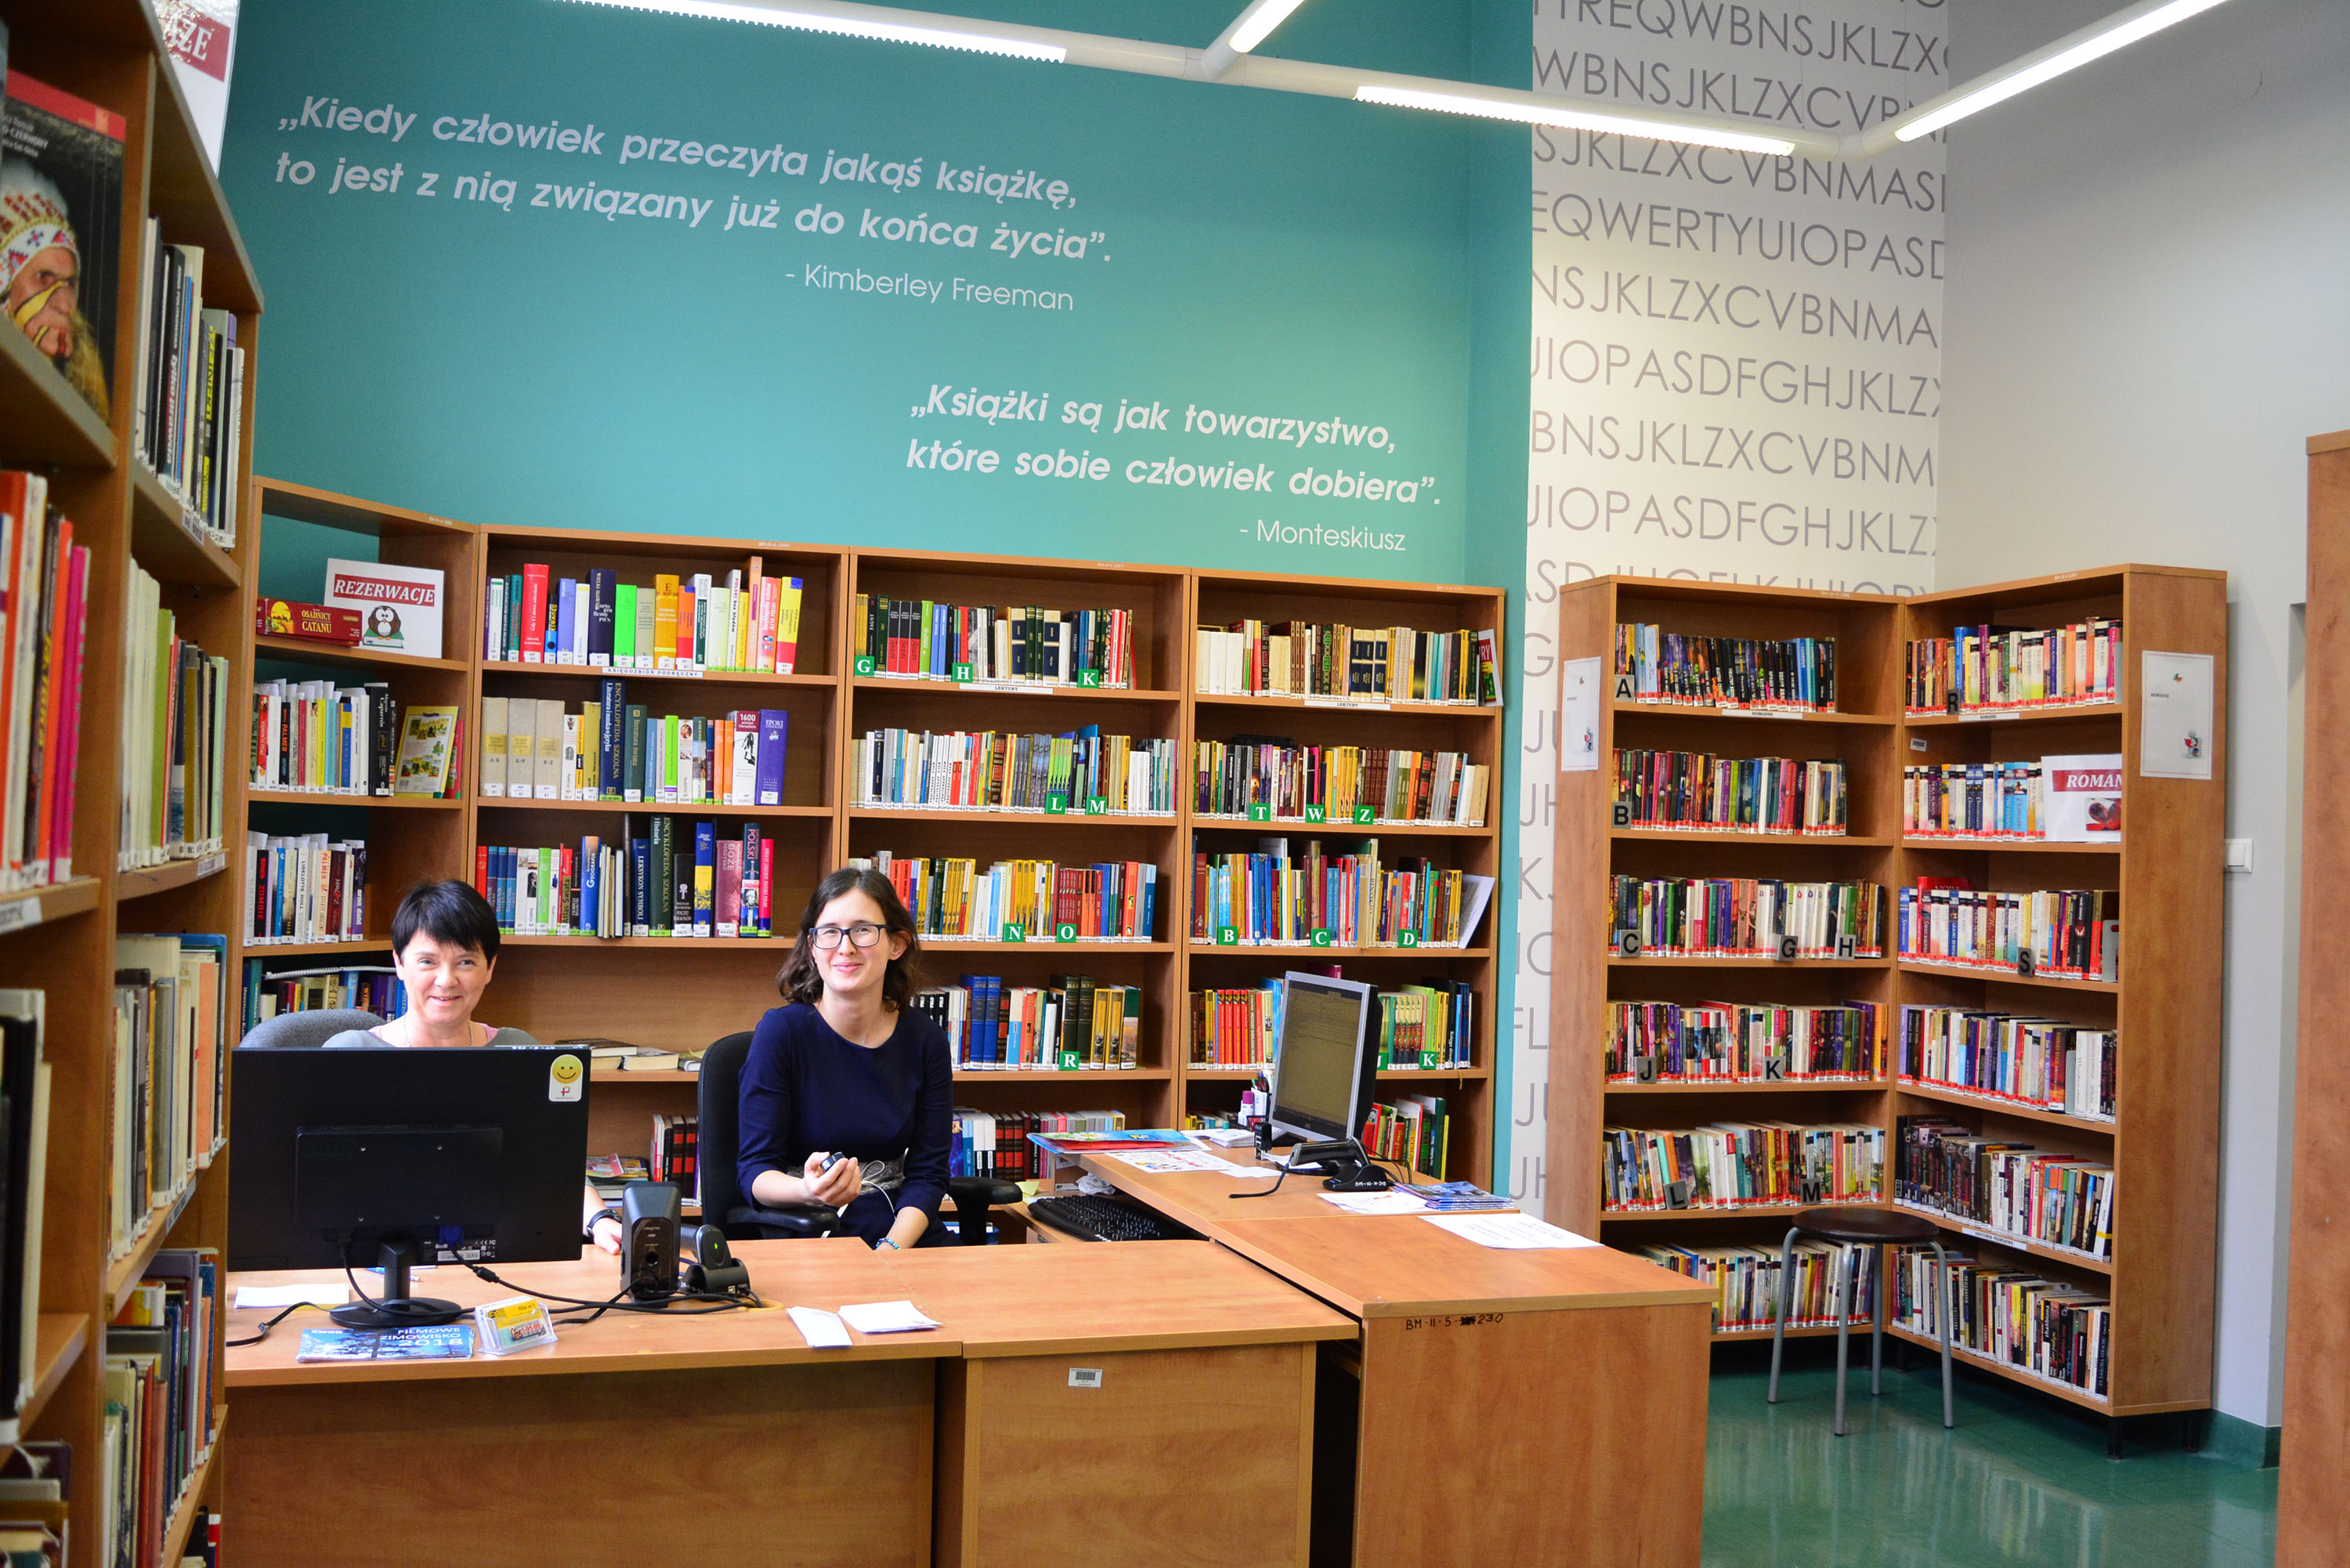 Municipal Public Library in Gliwice, Branch No. 1